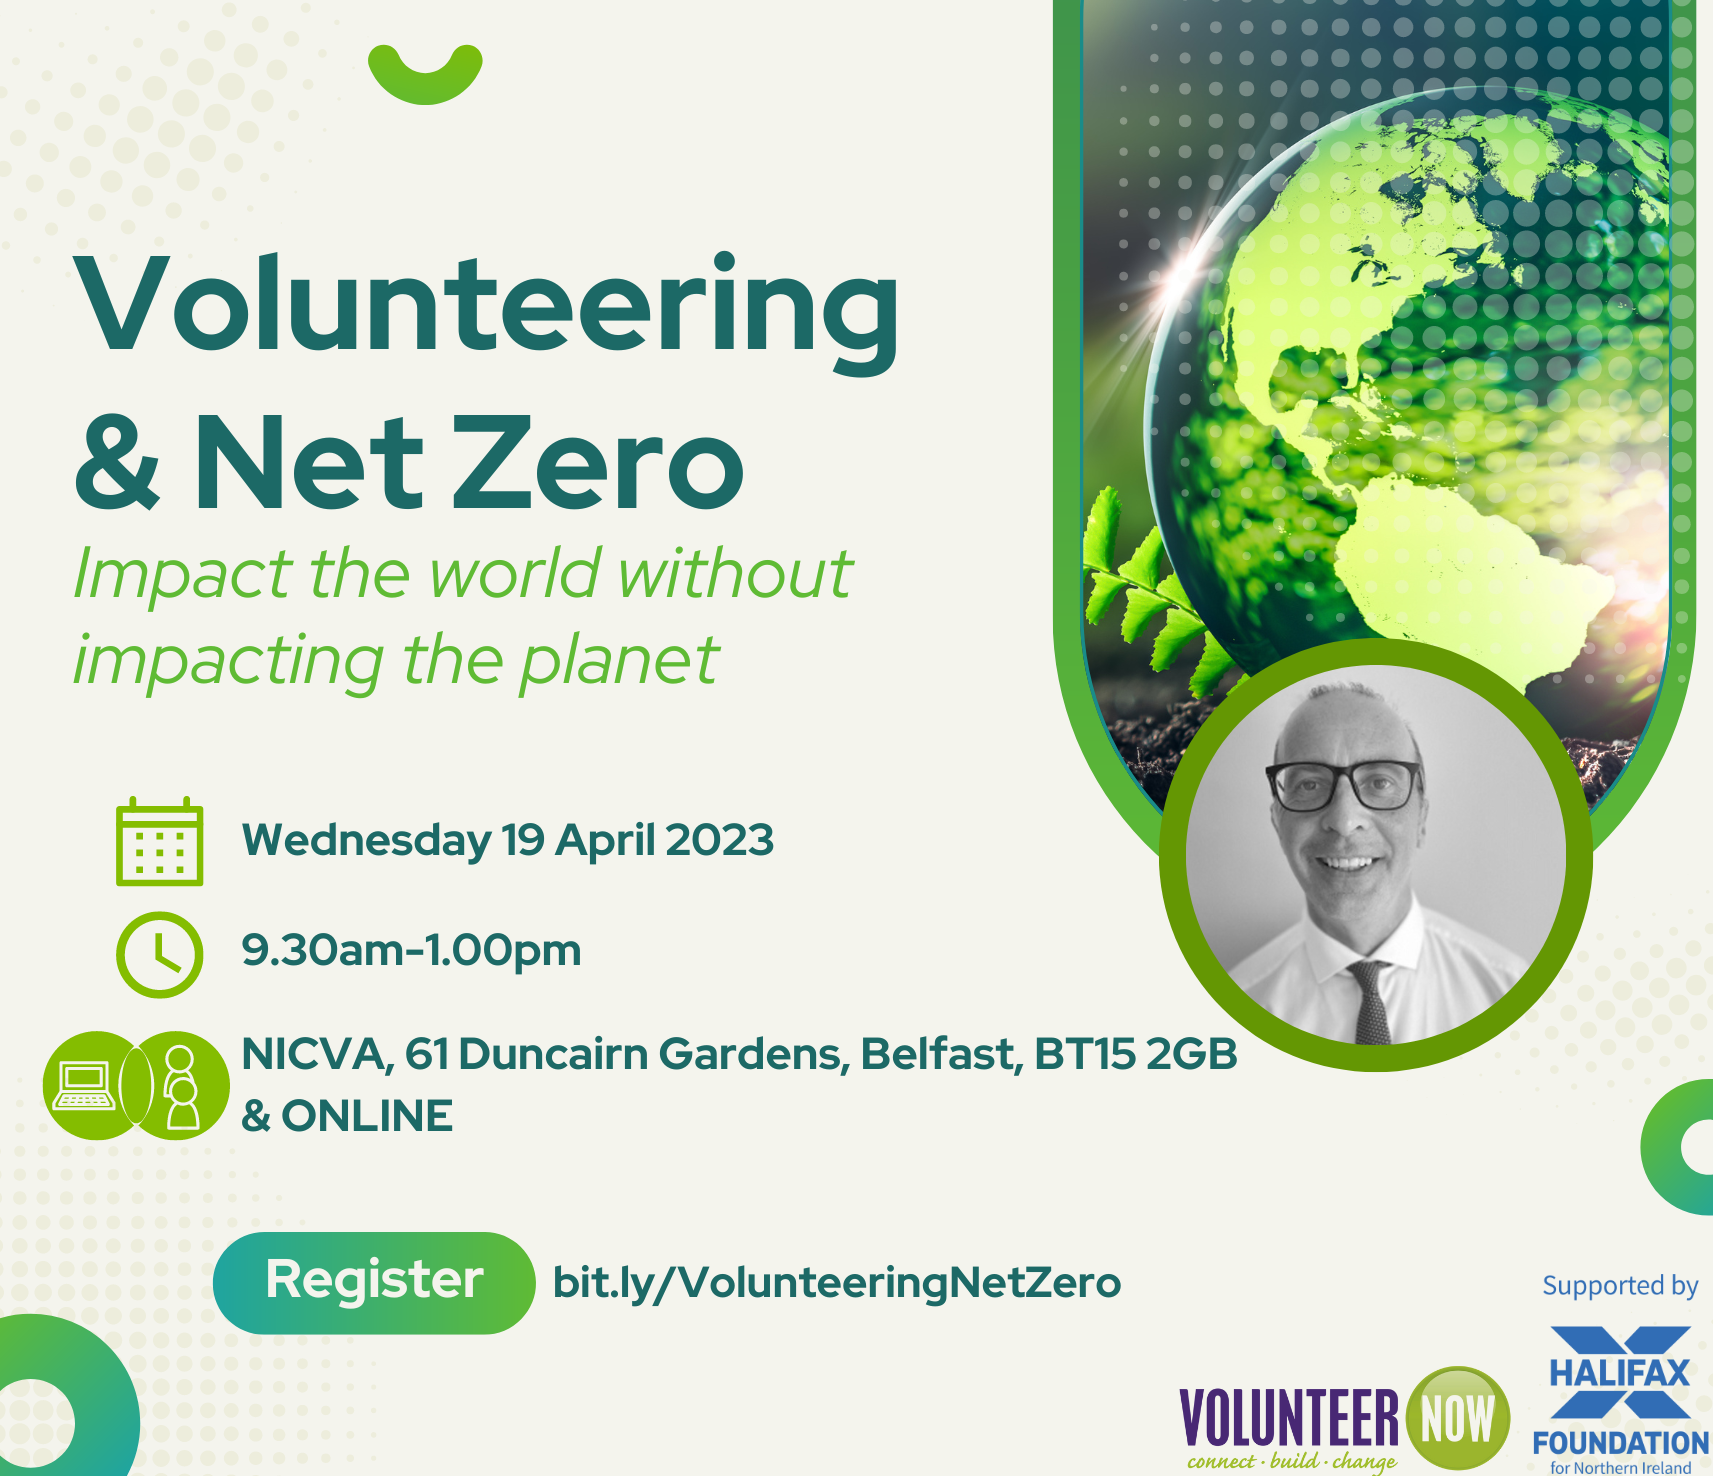 Volunteering & Net Zero seminar